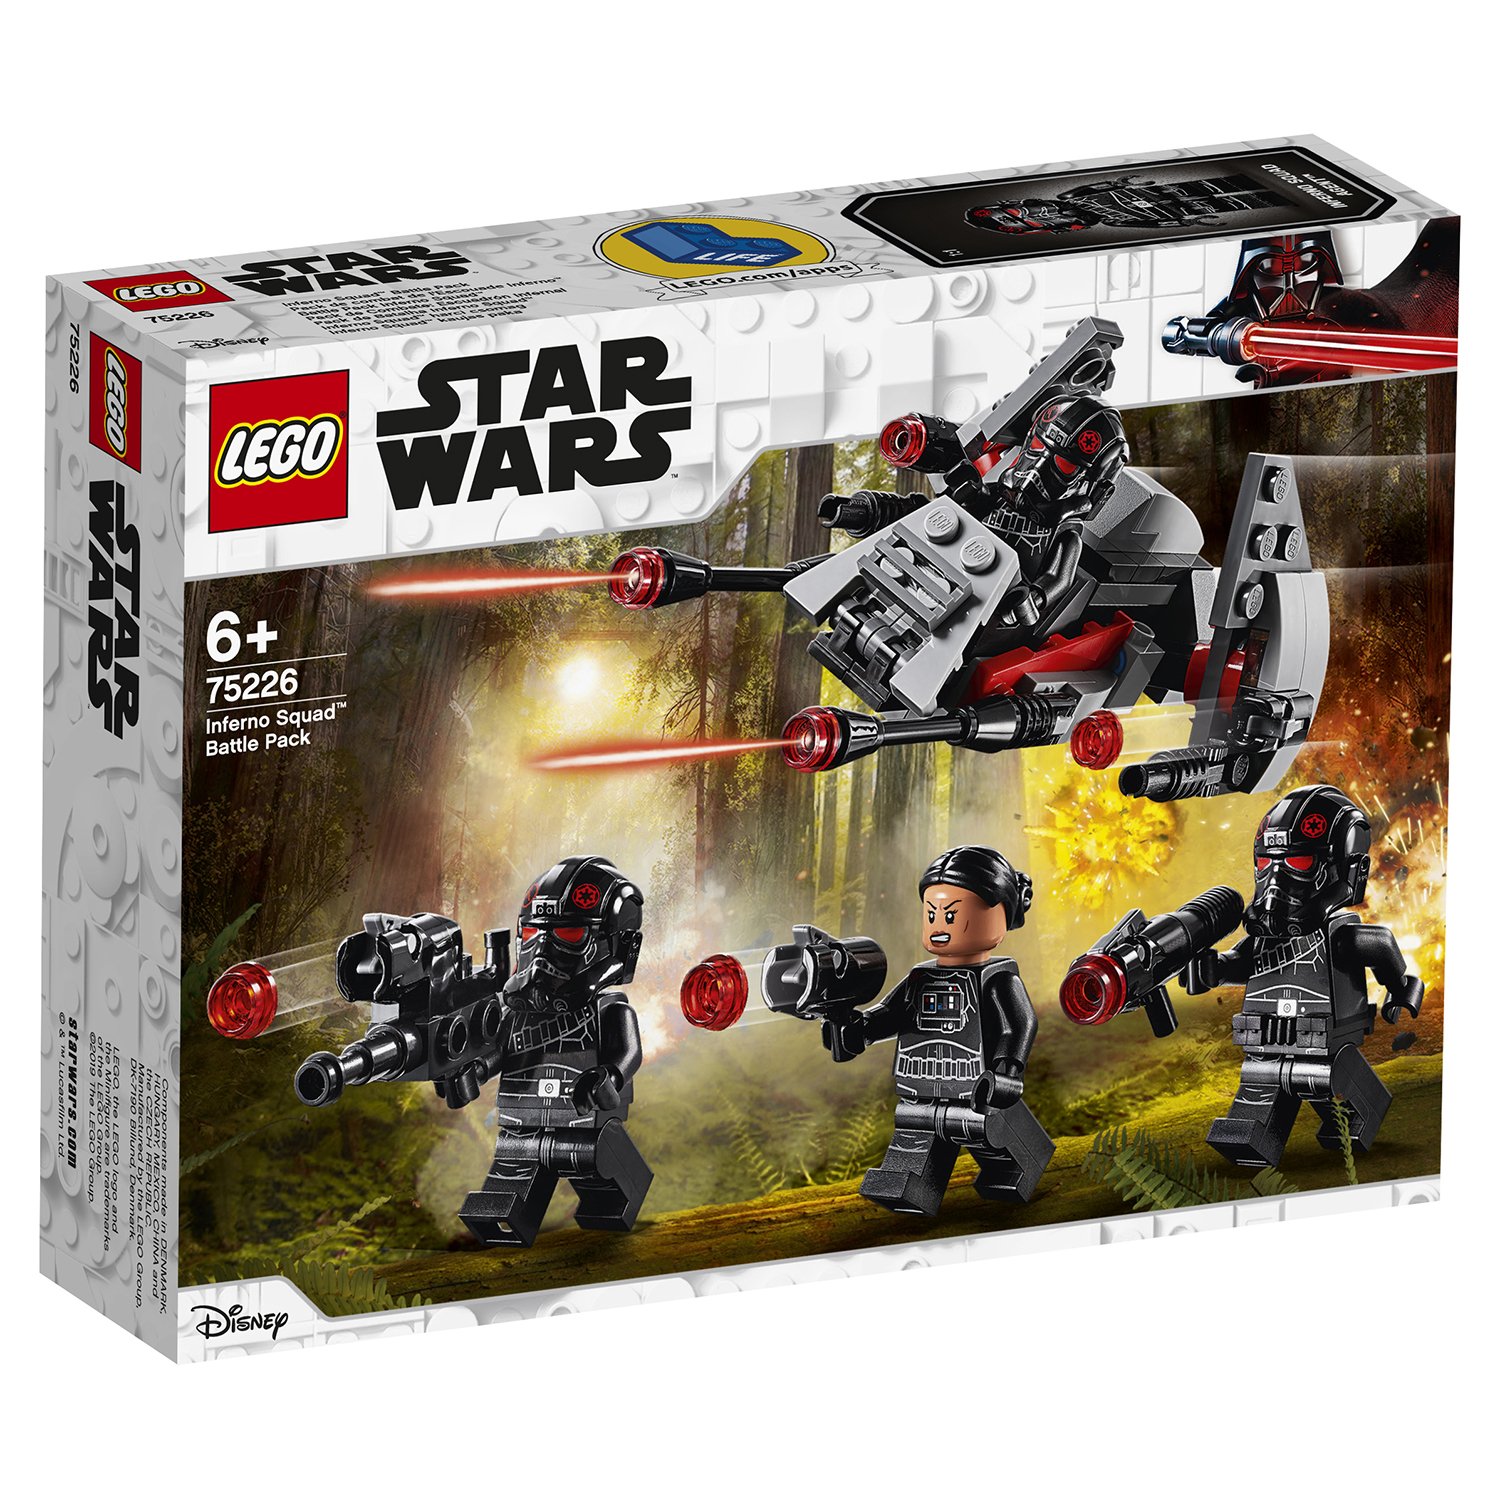 Lego Star Wars 75226 Боевой набор отряда «Инферно»